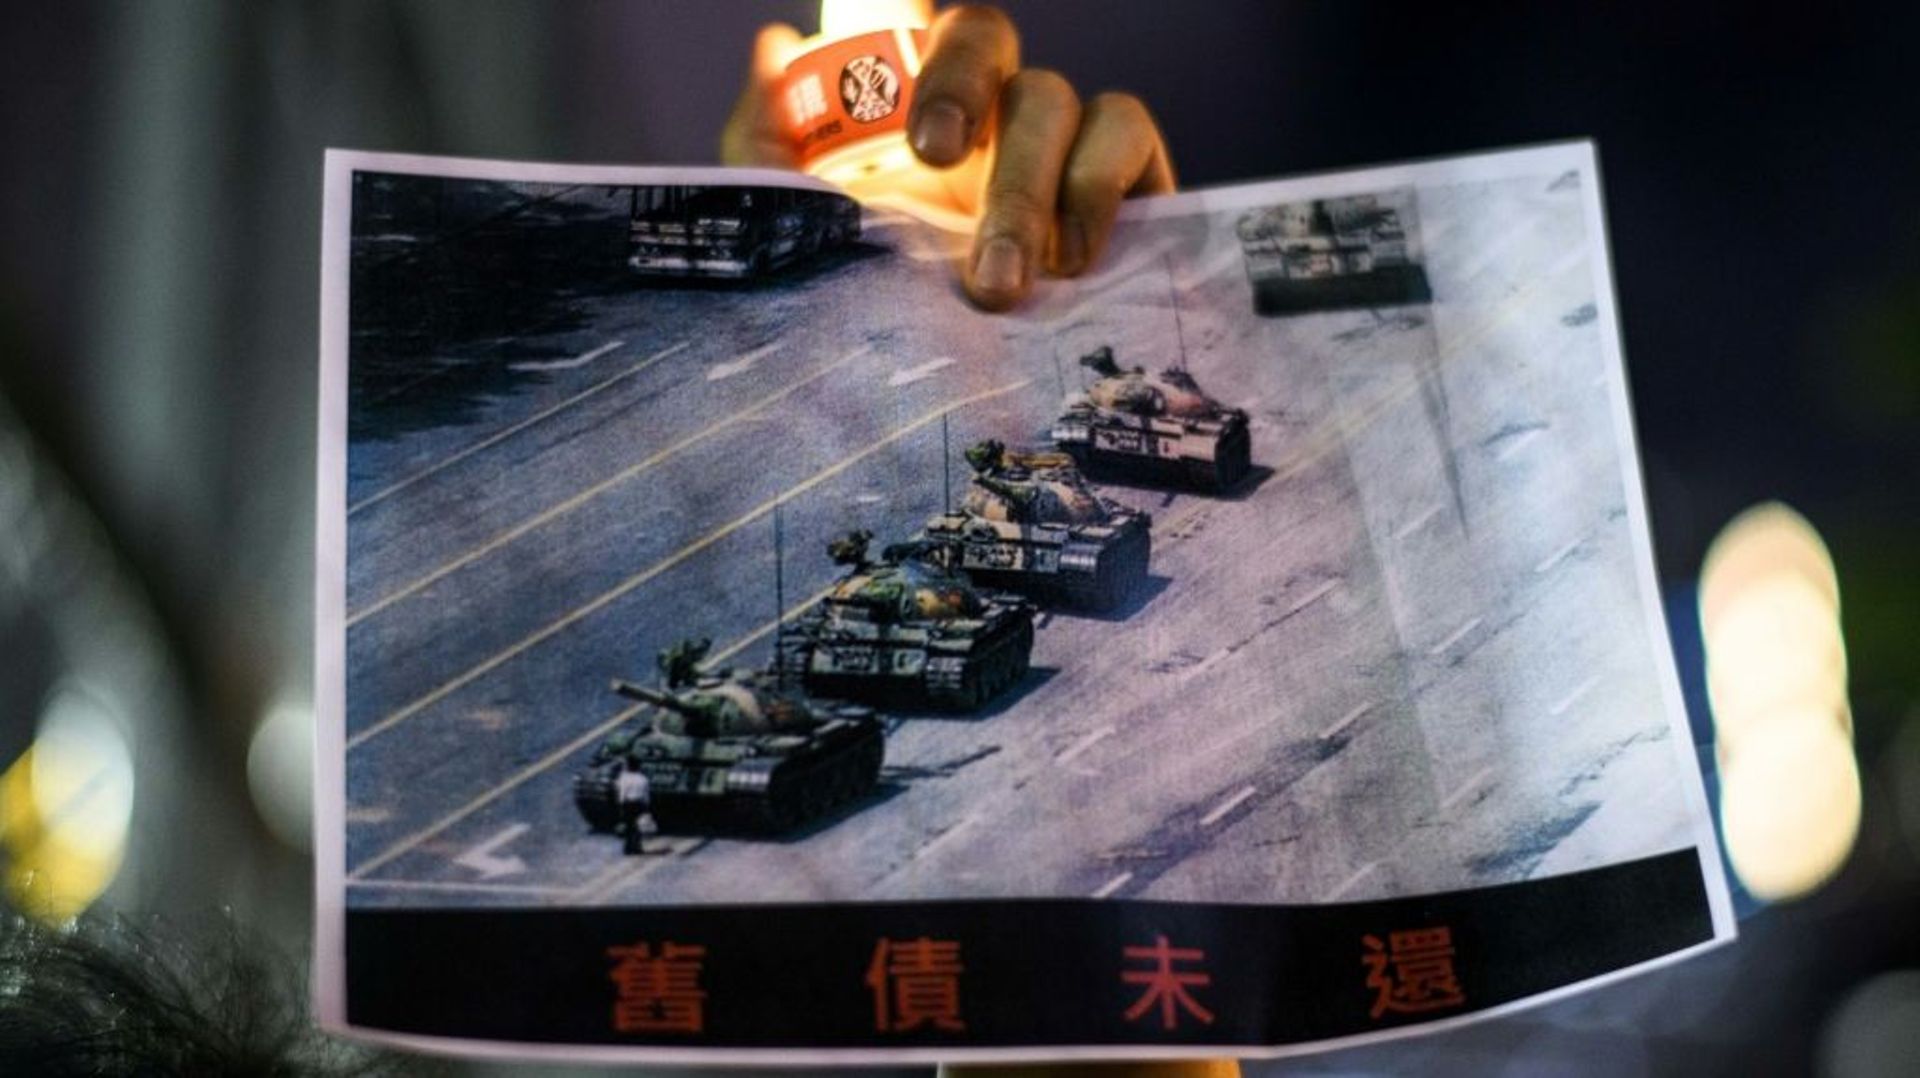 La photo du "Tank man" (l'Homme au char) lors d'une veillée pour commémorer les événement du 4 juin 1989 place Tiananmen, au parc Victoria, à Hong Kong, le 4 juin 2020 à Hong Kong